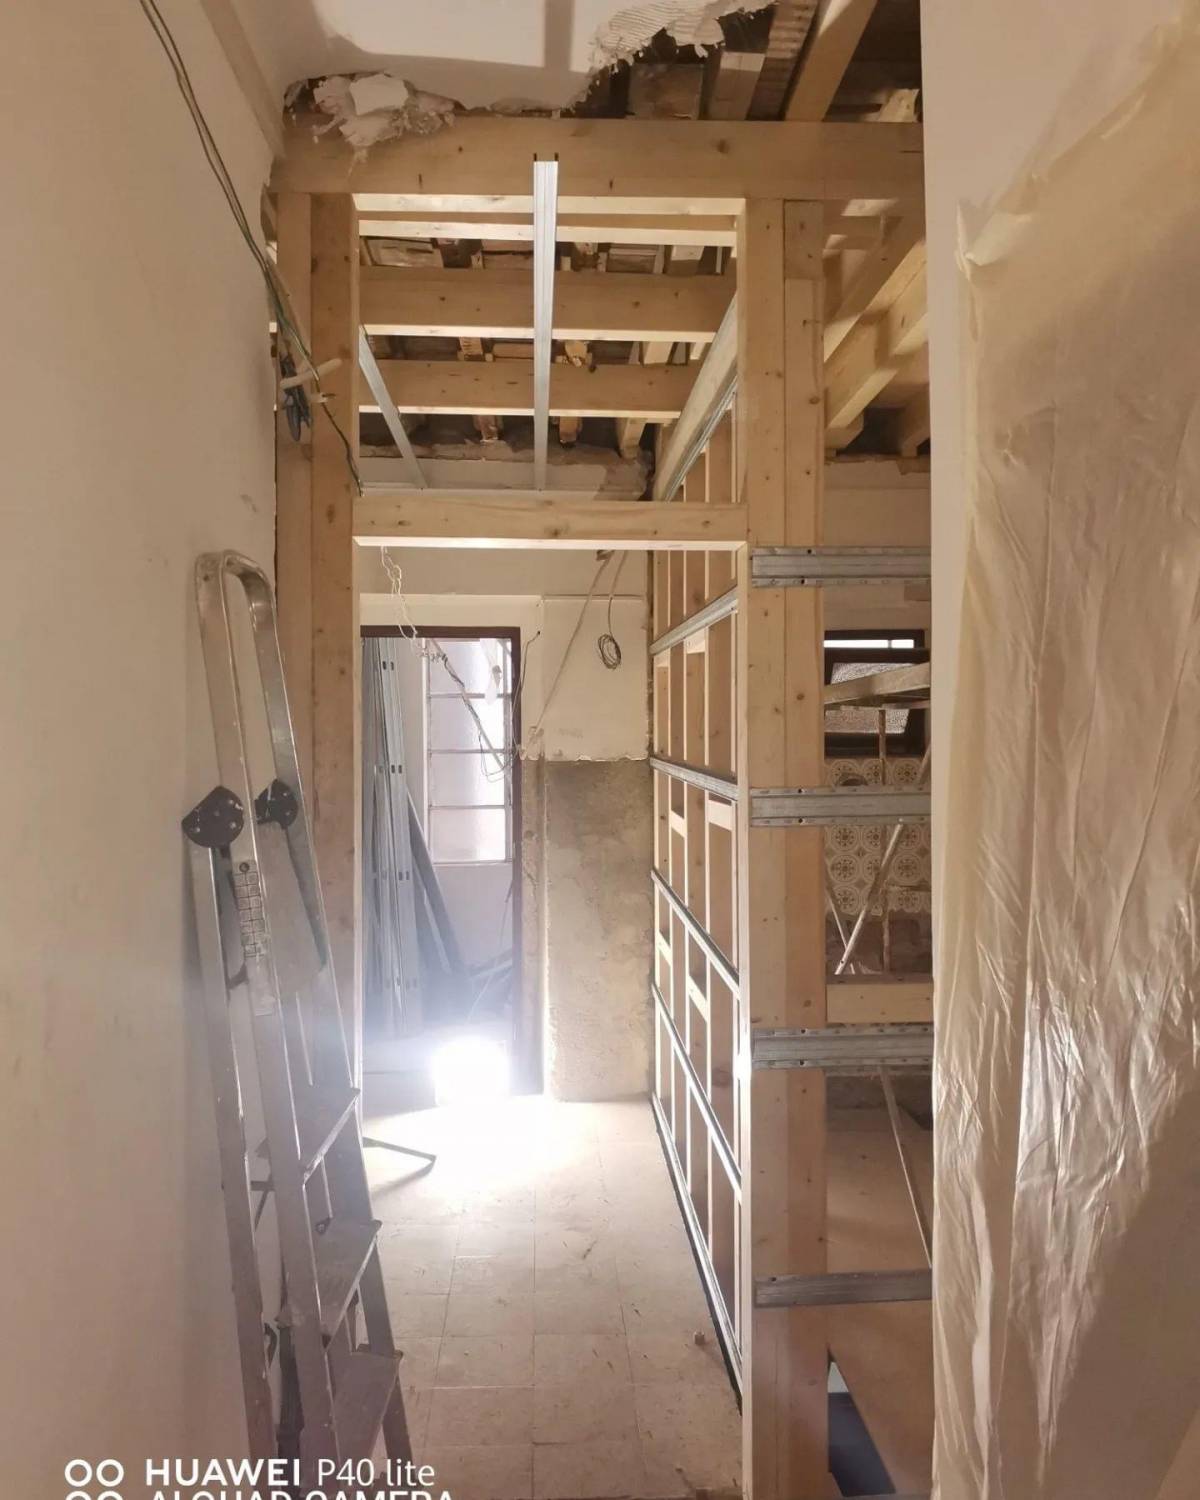 Eudes Carpinteiro - Lisboa - Construção ou Remodelação de Escadas e Escadarias